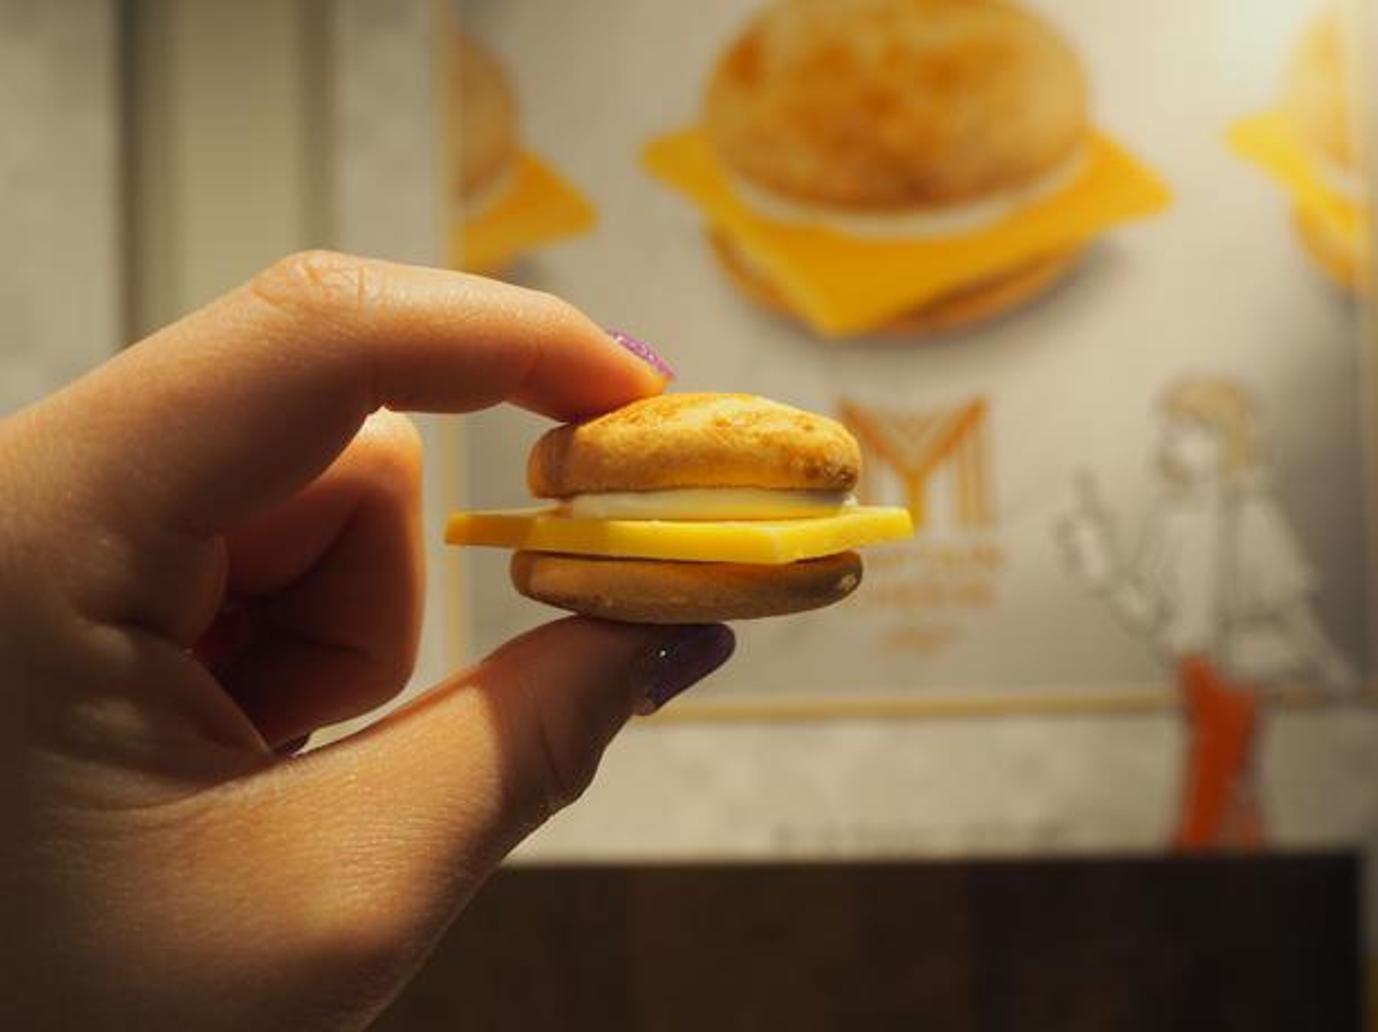 Camilan berbentuk cheeseburger yang kecil ini begitu kawaii (menggemaskan)!